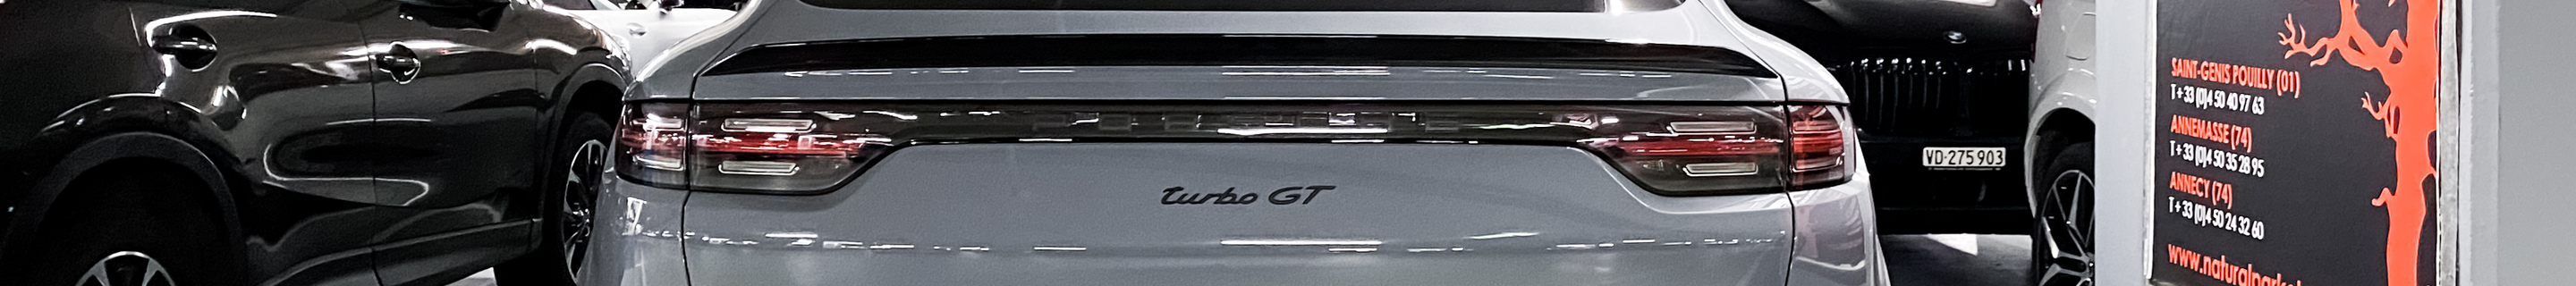 Porsche Cayenne Coupé Turbo GT